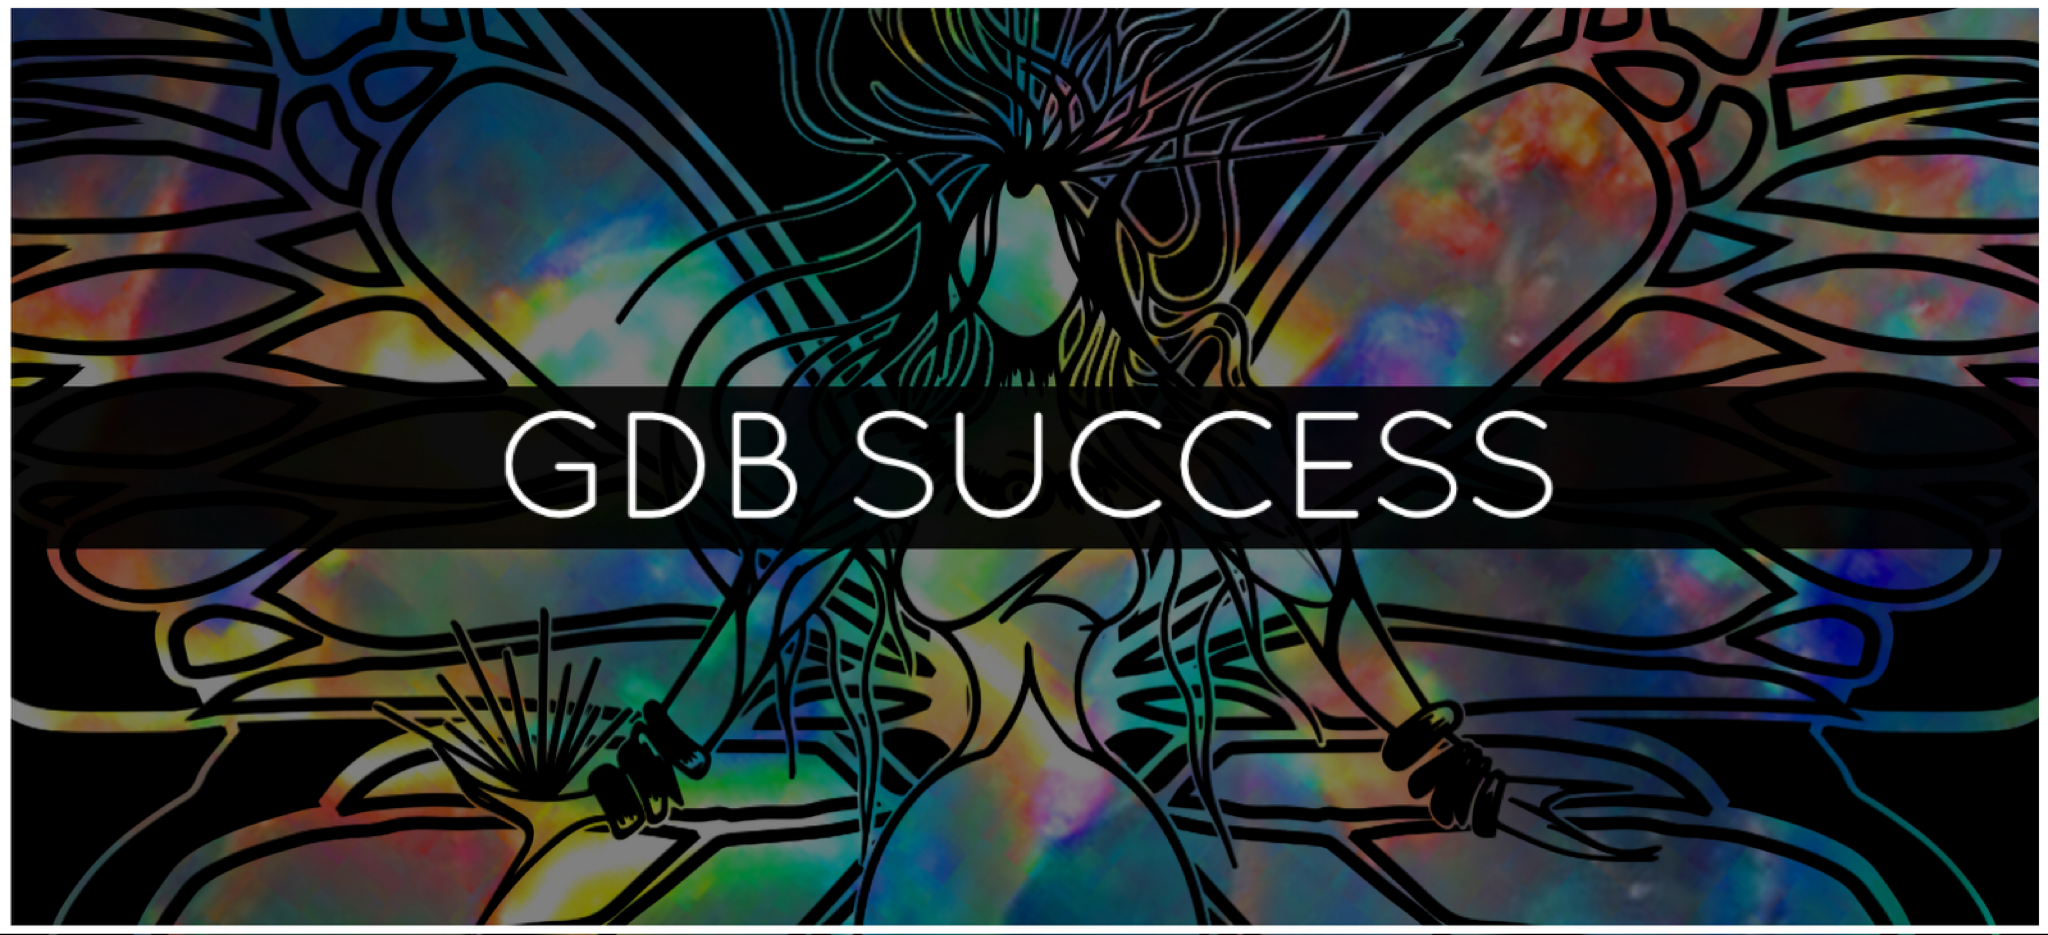 GDB SUCCESS TALISMAN™